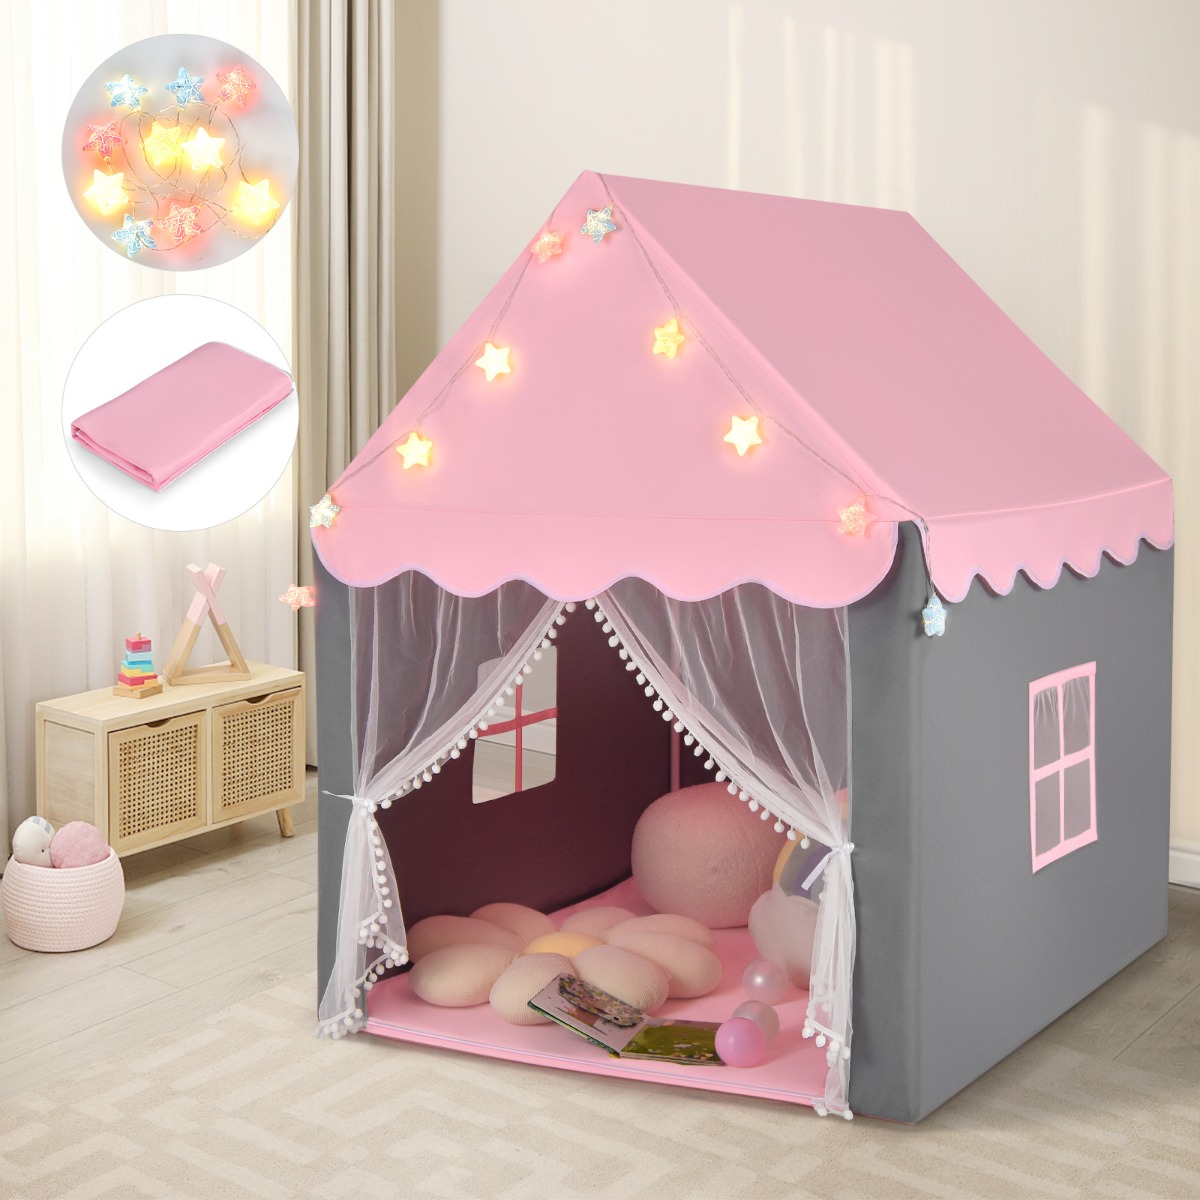 Kinderspeeltent Kinderspeelhuis met Star Lights 105 x 121 x 136 cm Roze + Grijs